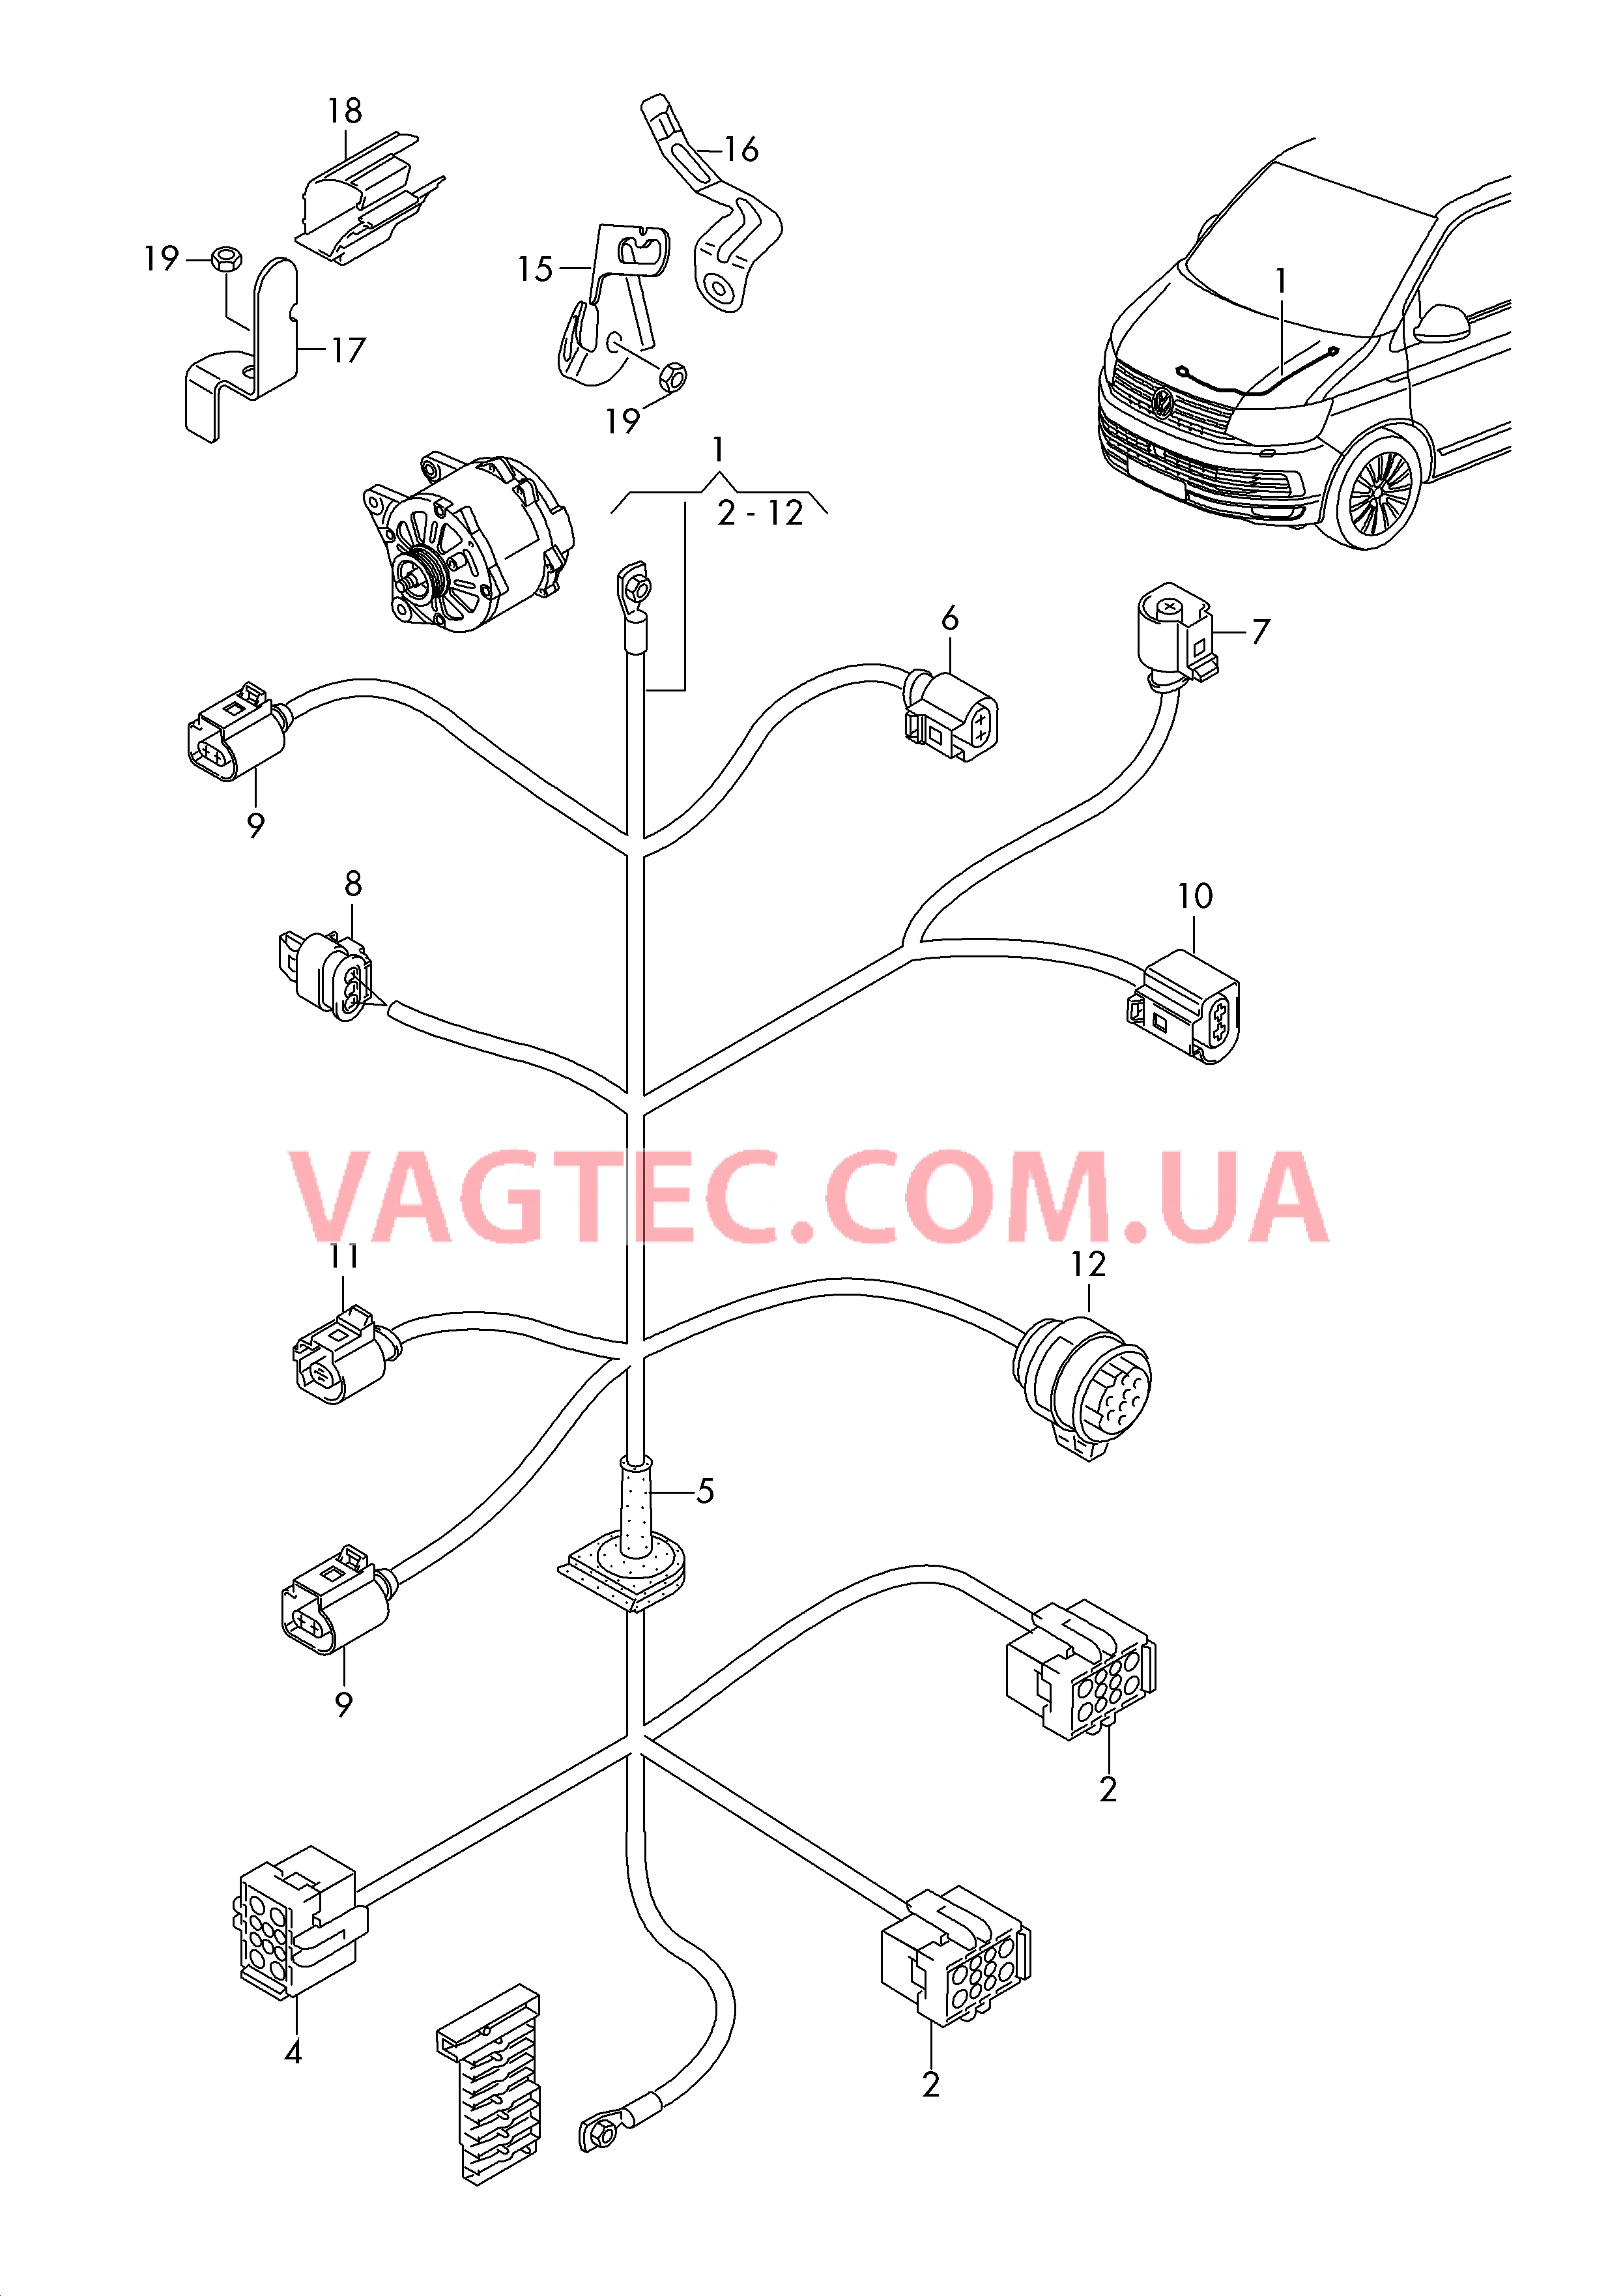 Жгут проводов для двигателя Генератор  для VOLKSWAGEN Transporter 2019-1